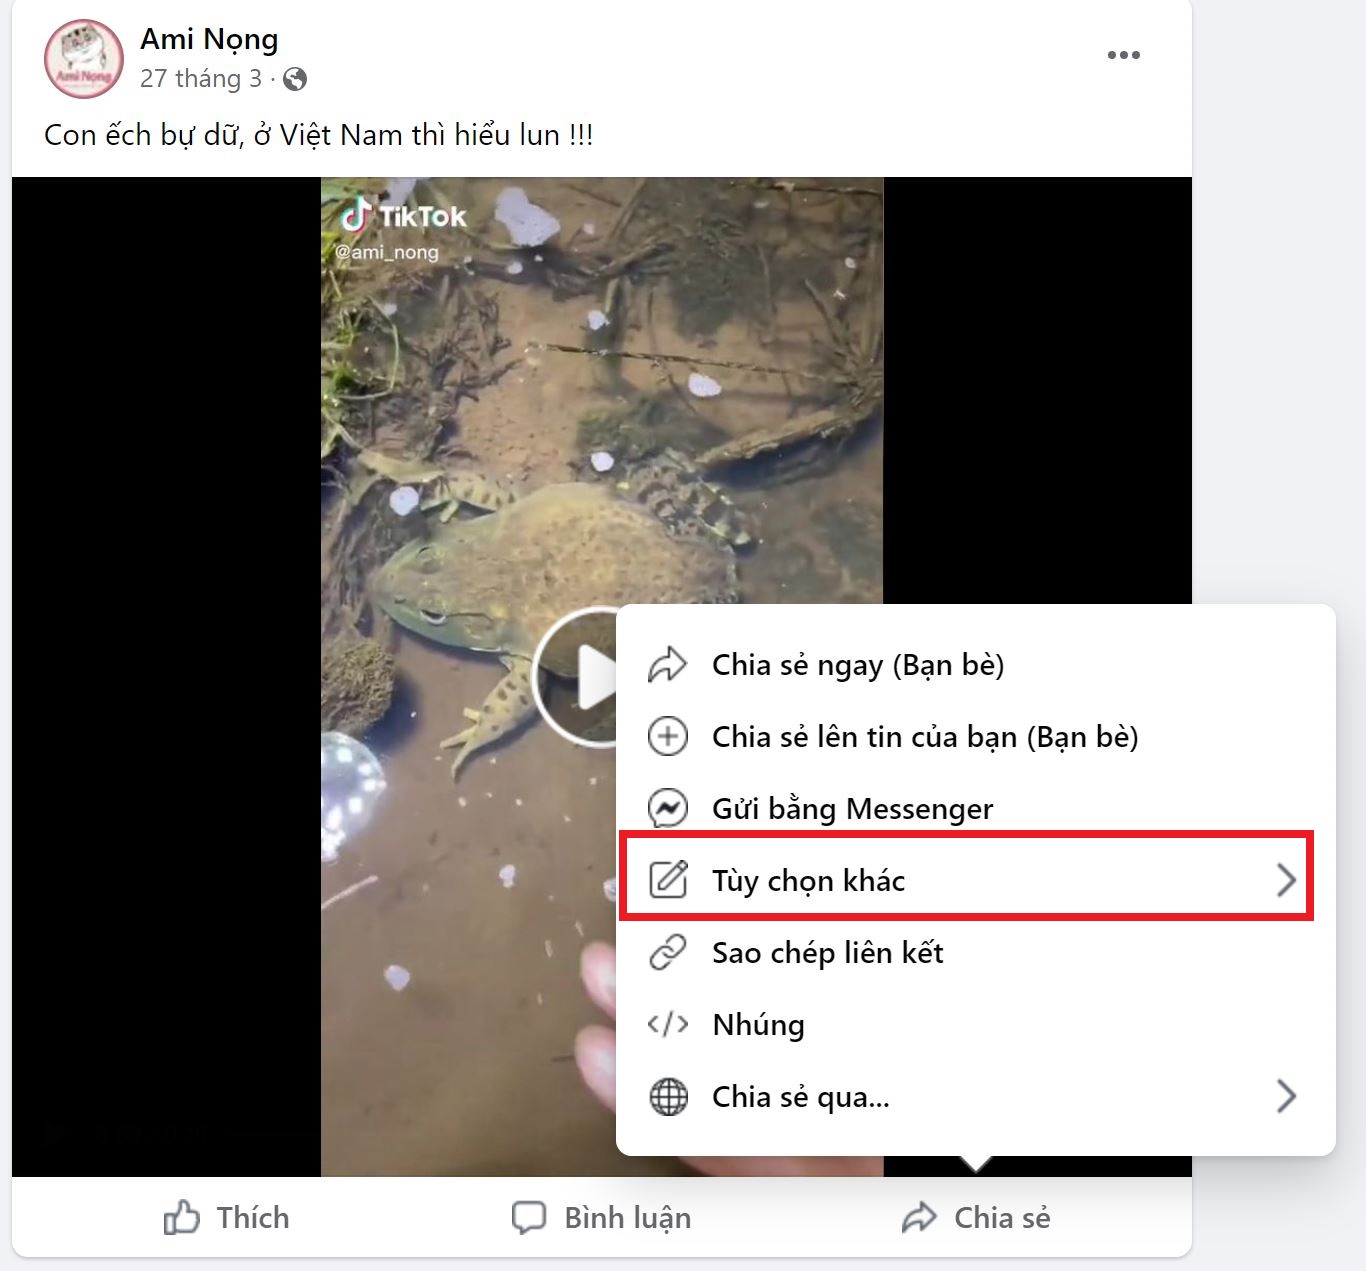 Hướng dẫn chia sẻ video-bài viết từ Facebook sang Zalo đơn giản 2